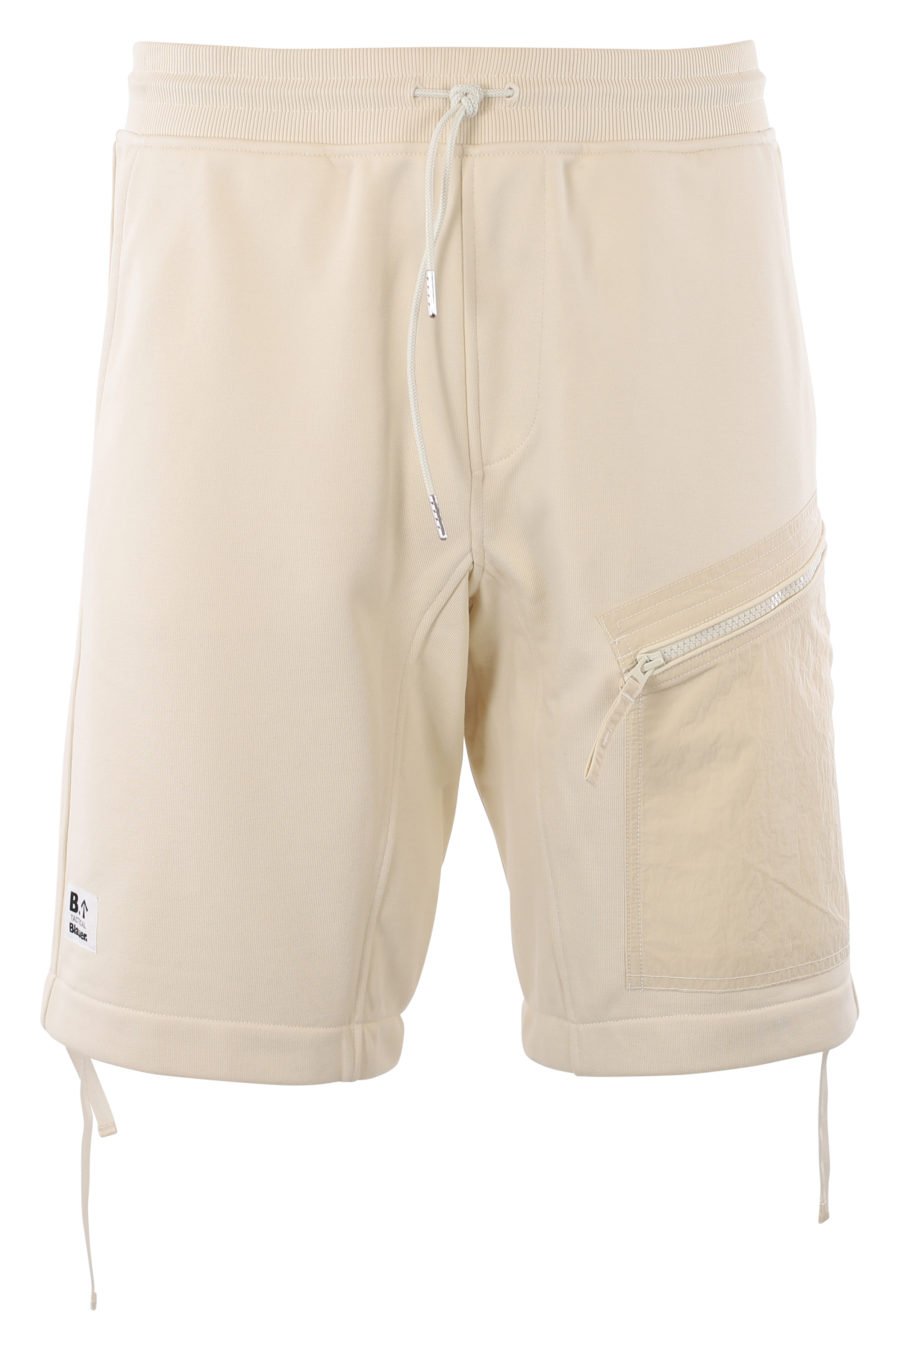 Pantalón corto de color natural con bolsillos - IMG 2010